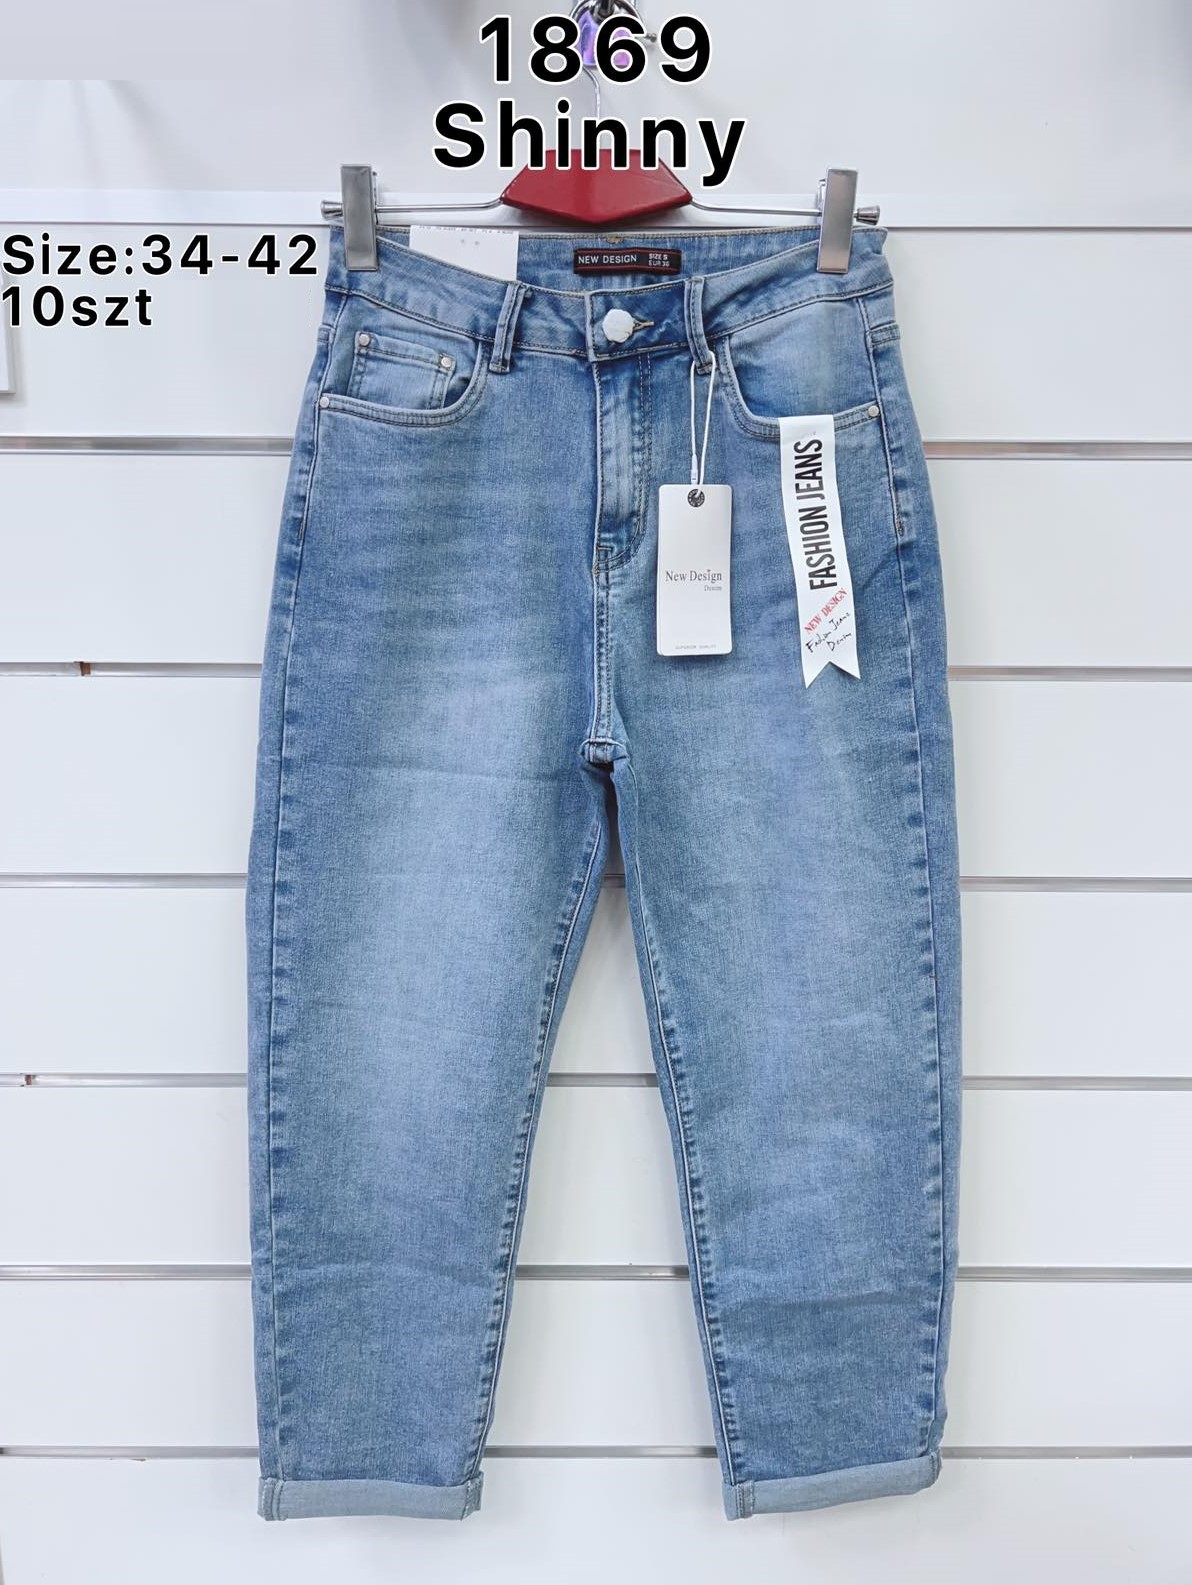 Spodnie  damskie jeans Roz  34-42.  1 kolor . Paczka 10szt